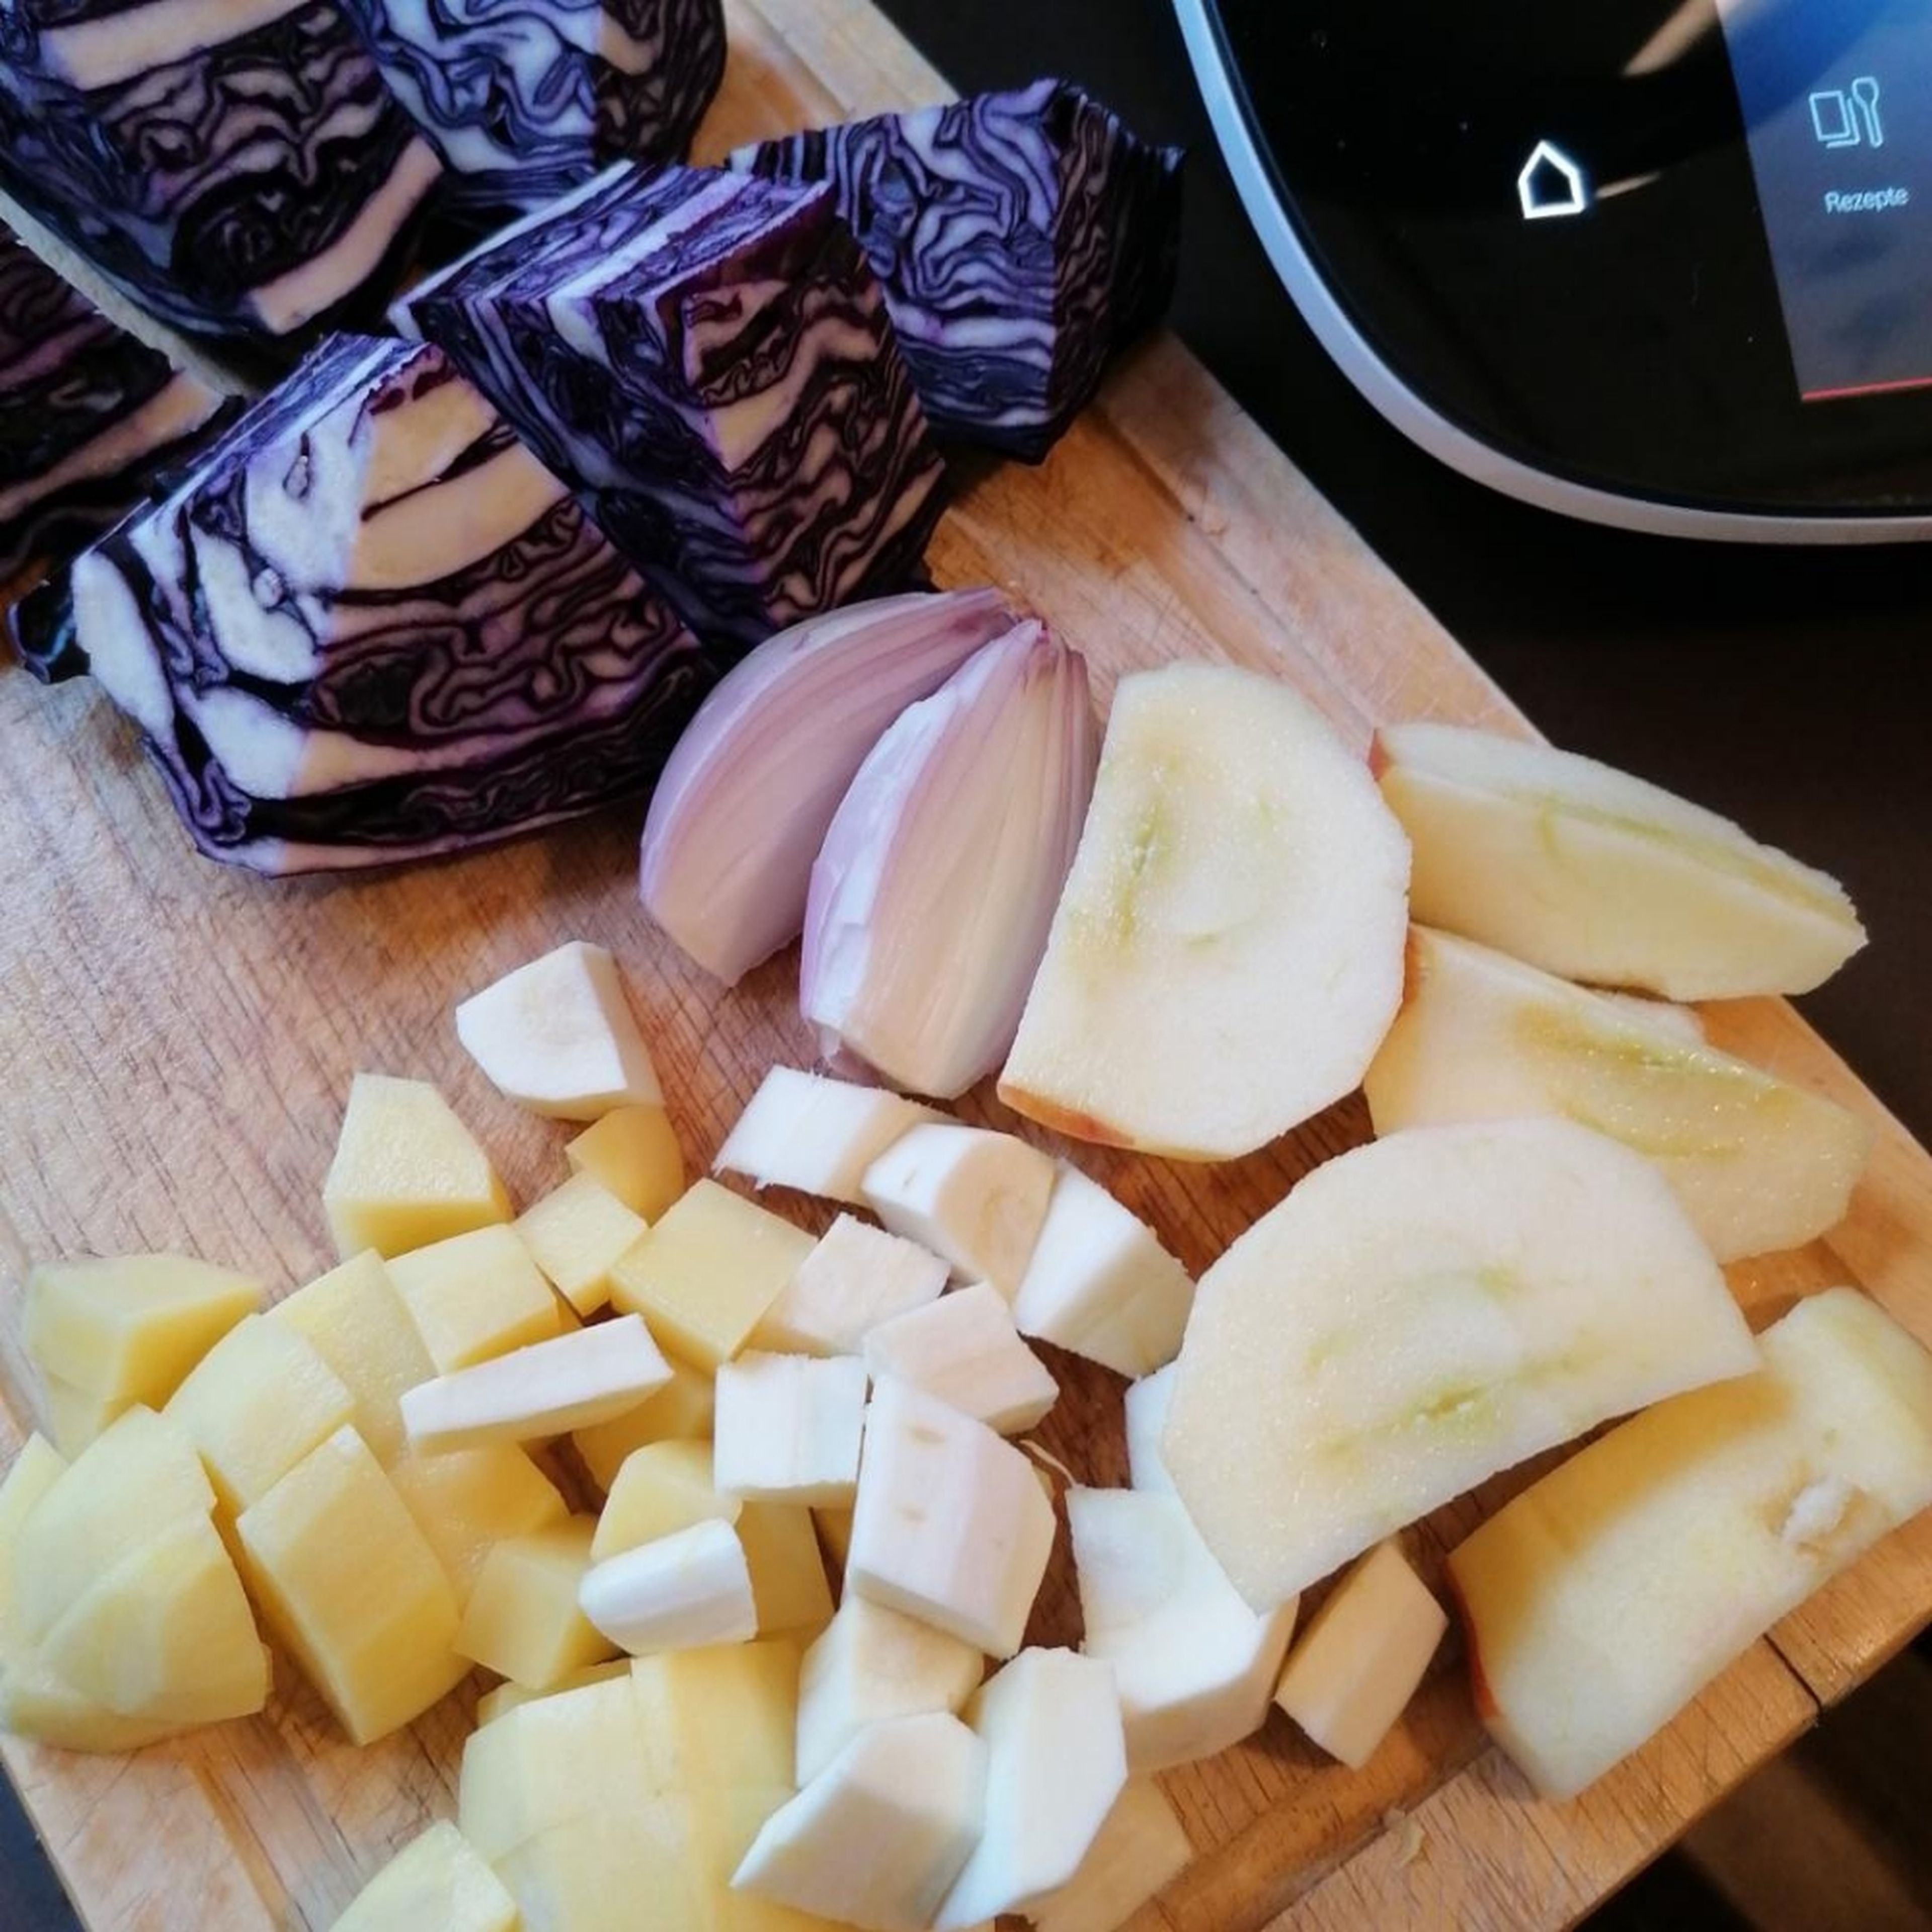 Vom Rotkohl den Strunk entfernen und in grobe Stücke schneiden. Apfel, Kartoffel und Pastinake schälen. Apfel vierteln und entkernen, Pastinake + Kartoffel in Würfel schneiden. Schalotte schälen und halbieren.